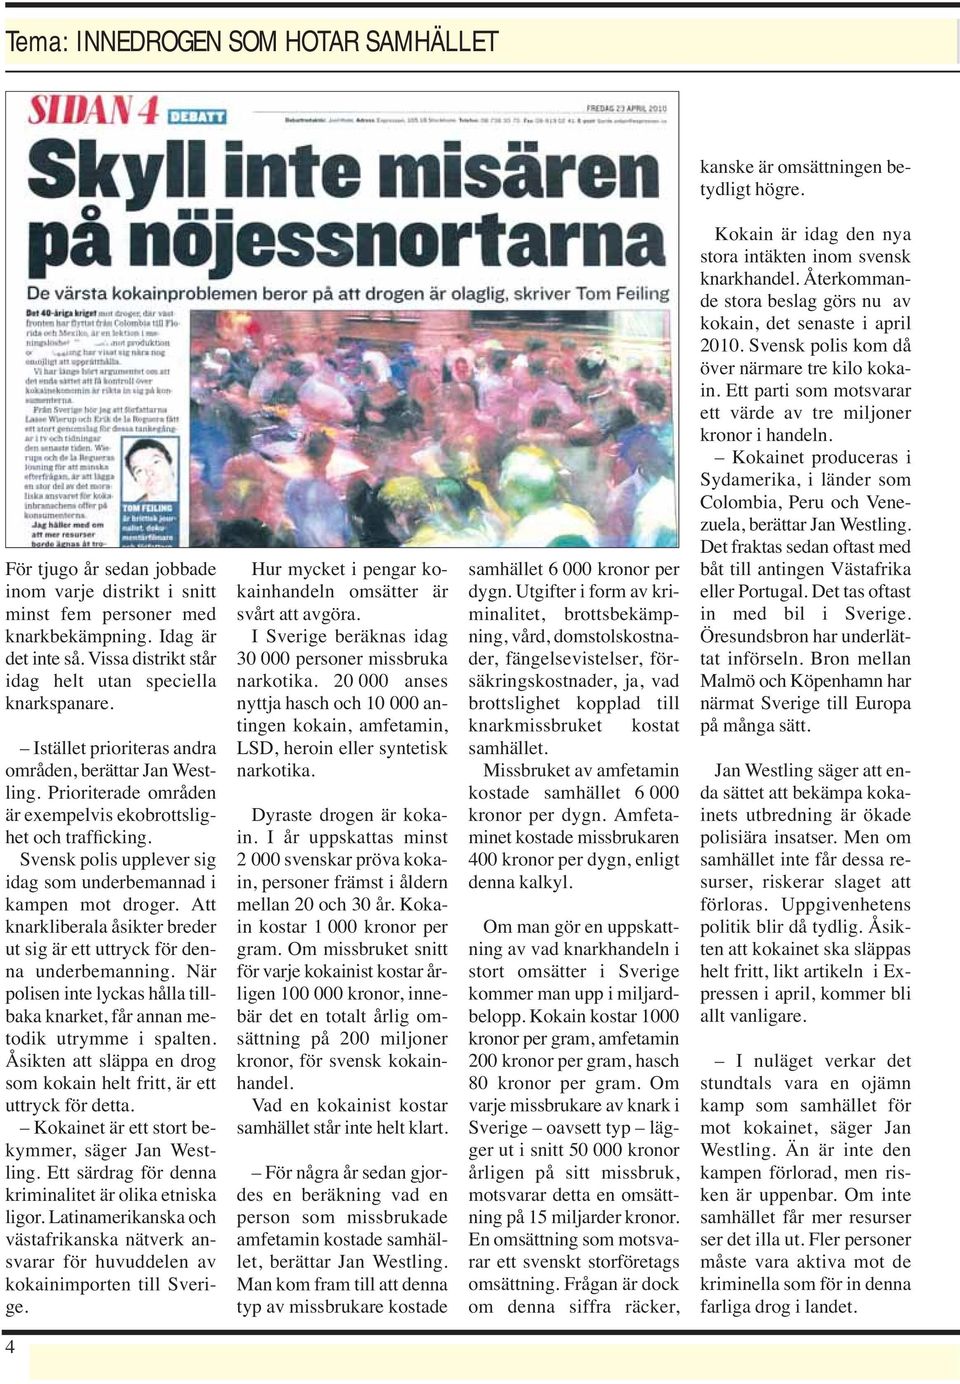 Svensk polis upplever sig idag som underbemannad i kampen mot droger. Att knarkliberala åsikter breder ut sig är ett uttryck för denna underbemanning.